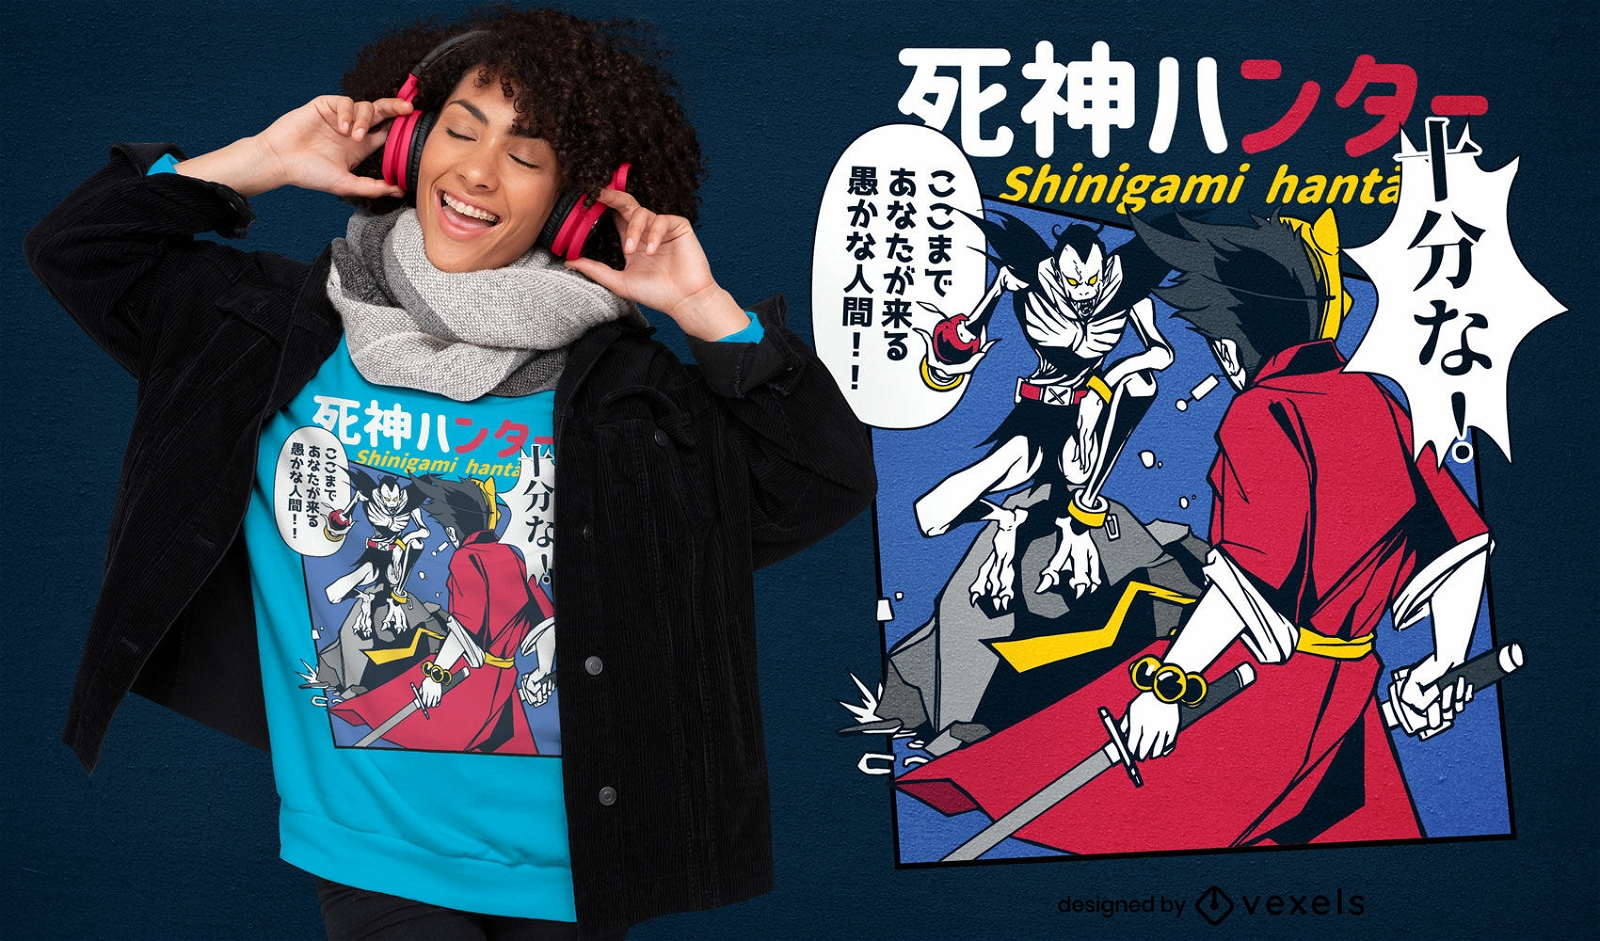 Japanisches Monster-Comic-T-Shirt-Design